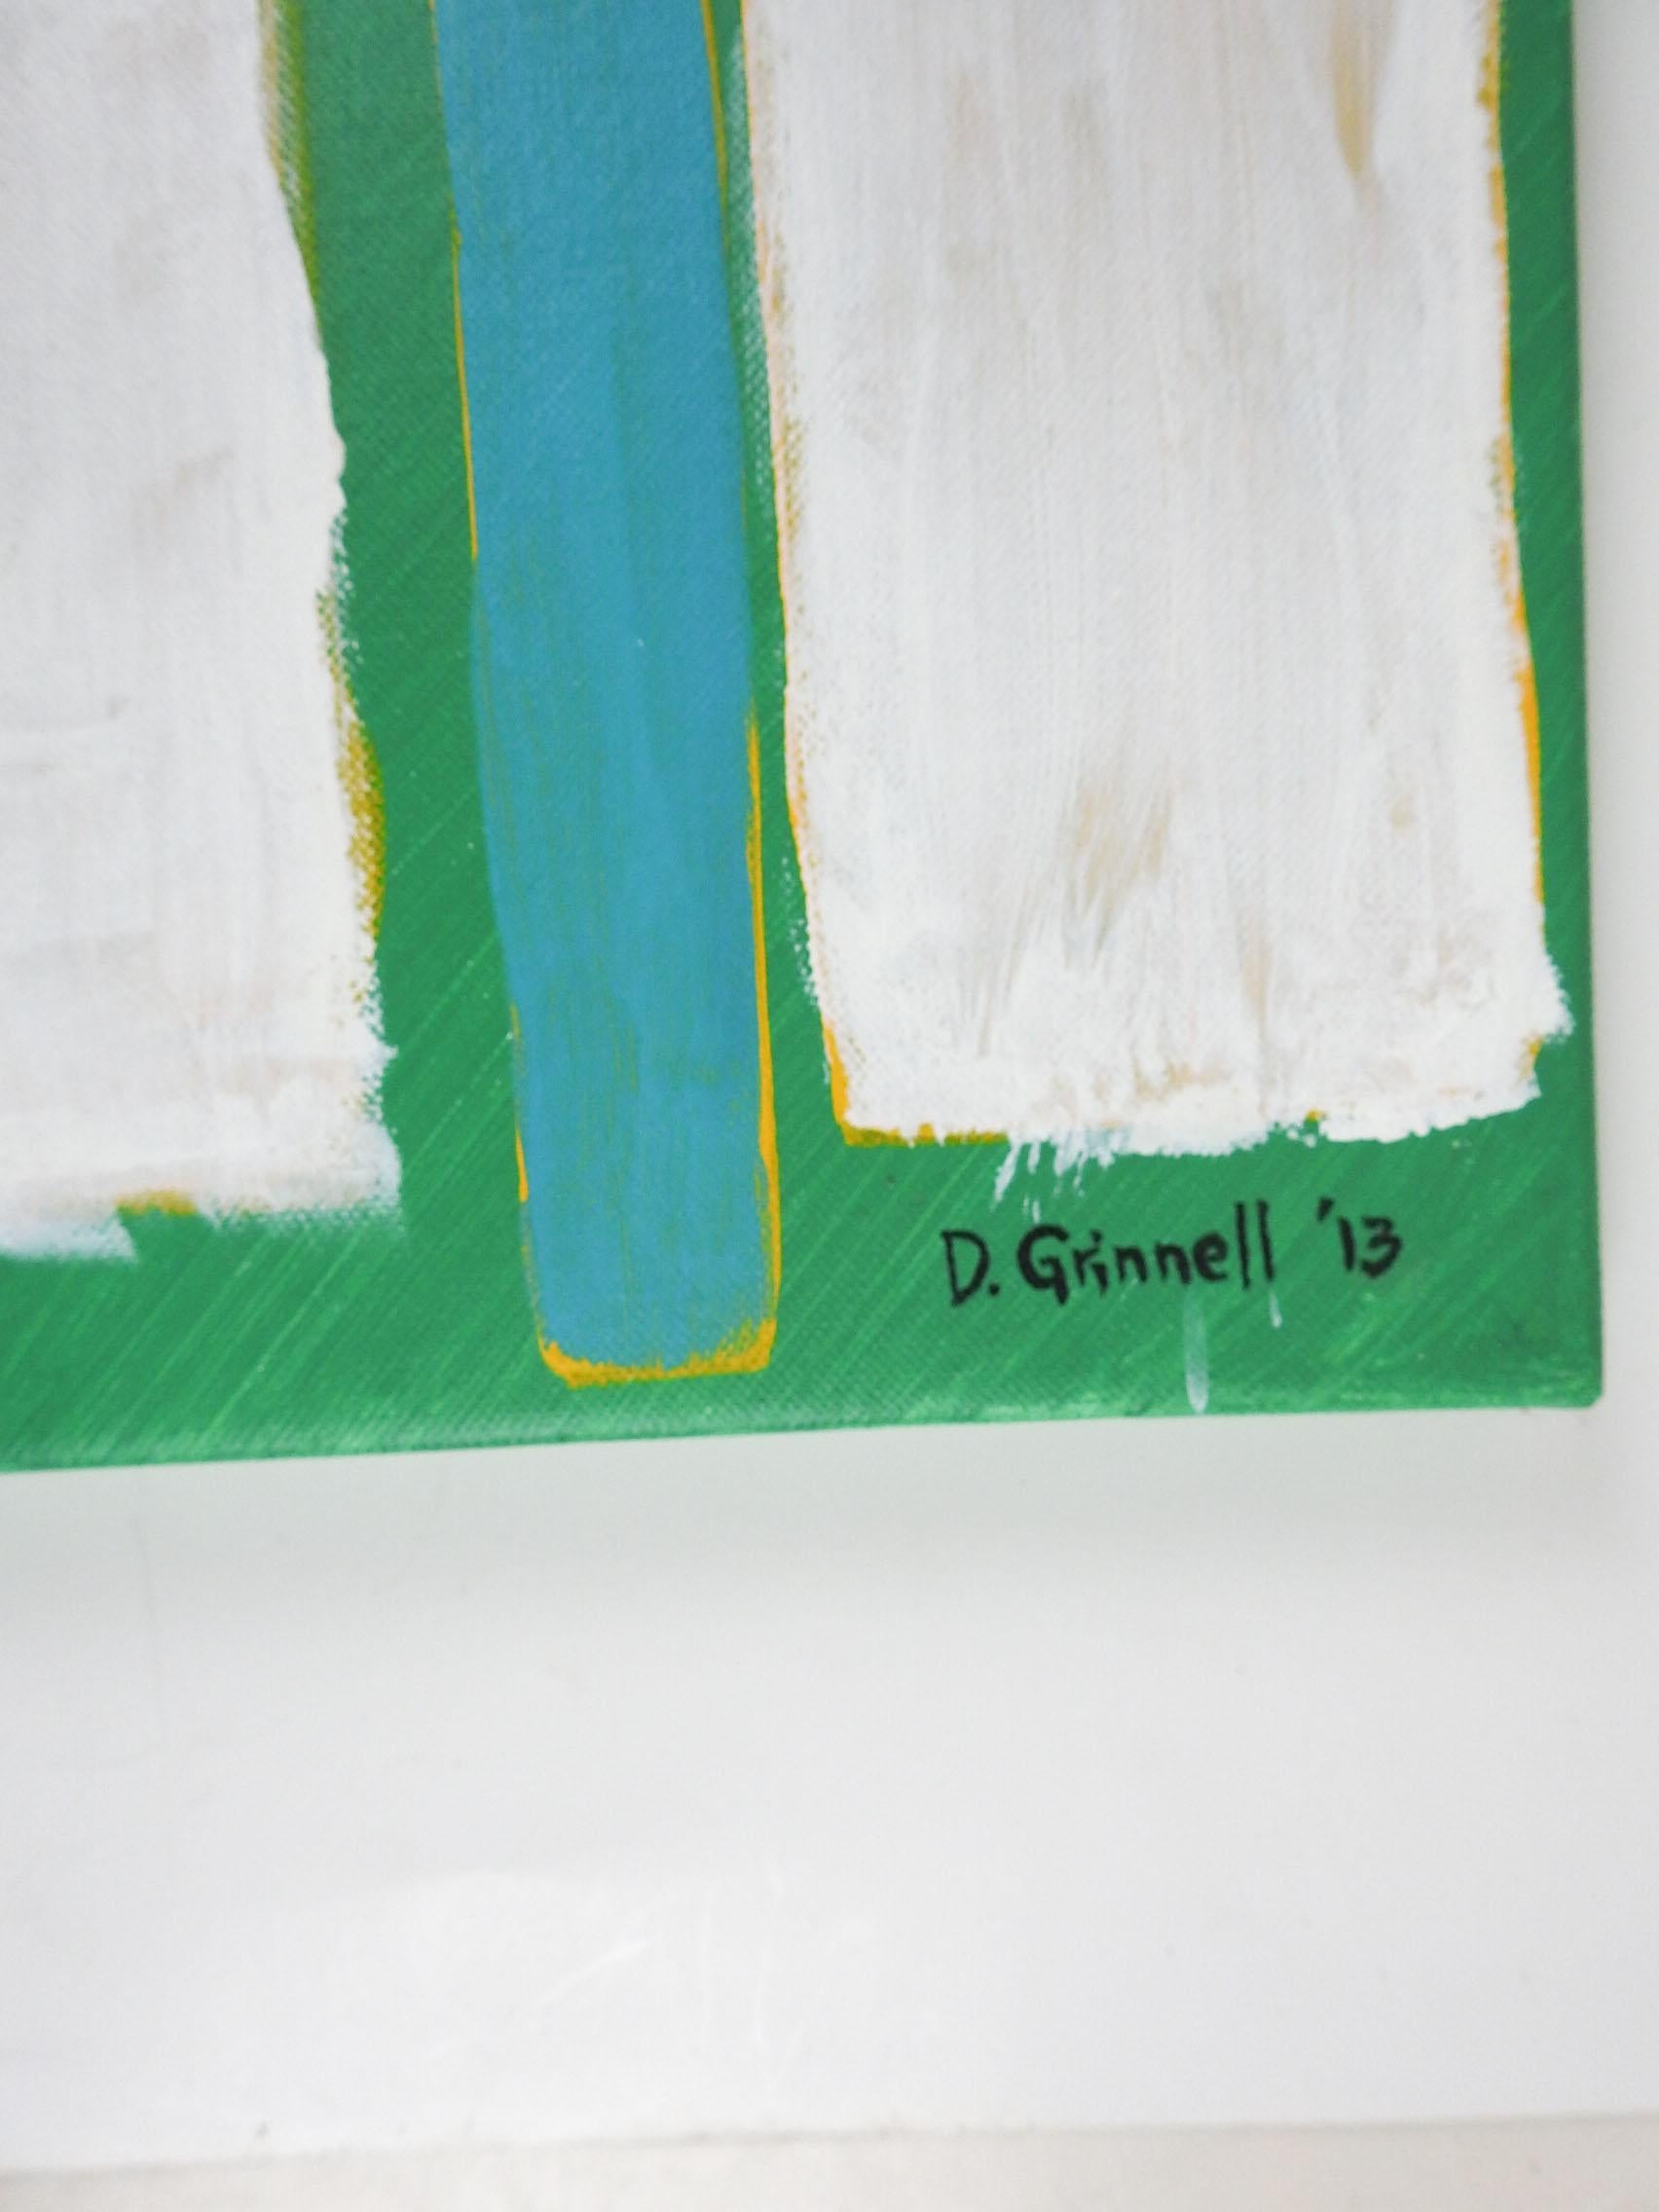 2013 peinture acrylique abstraite sur toile de David Grinnell (21e siècle) Texas. En vert, bleu et blanc. Signé en bas à droite, signé, titré Diebenkorn's Landscape au verso. Non encadré, bon état.